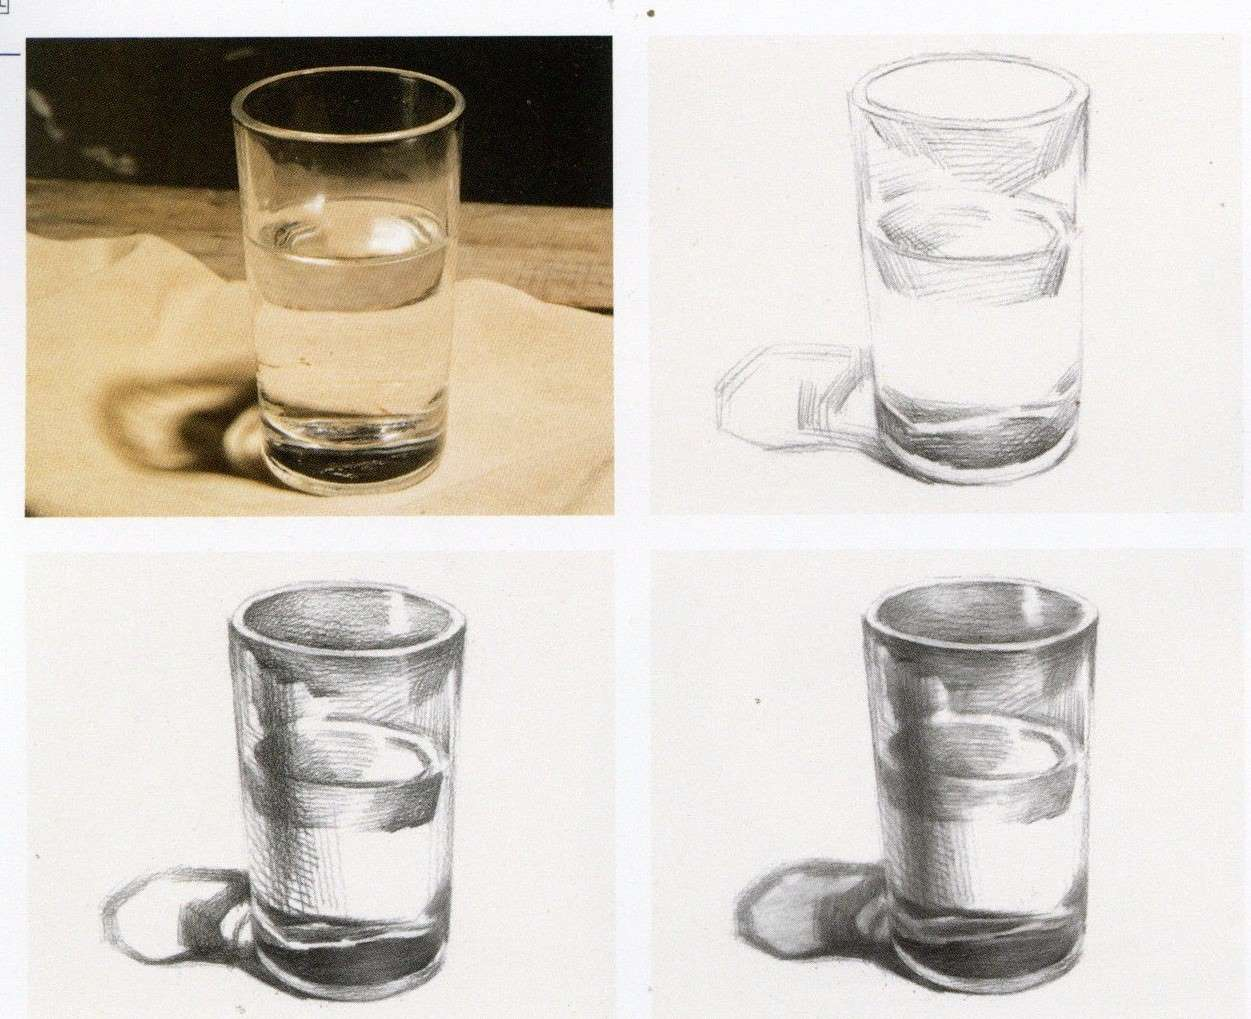 [基础] 盛满水的玻璃杯怎么画 | MediBang Paint